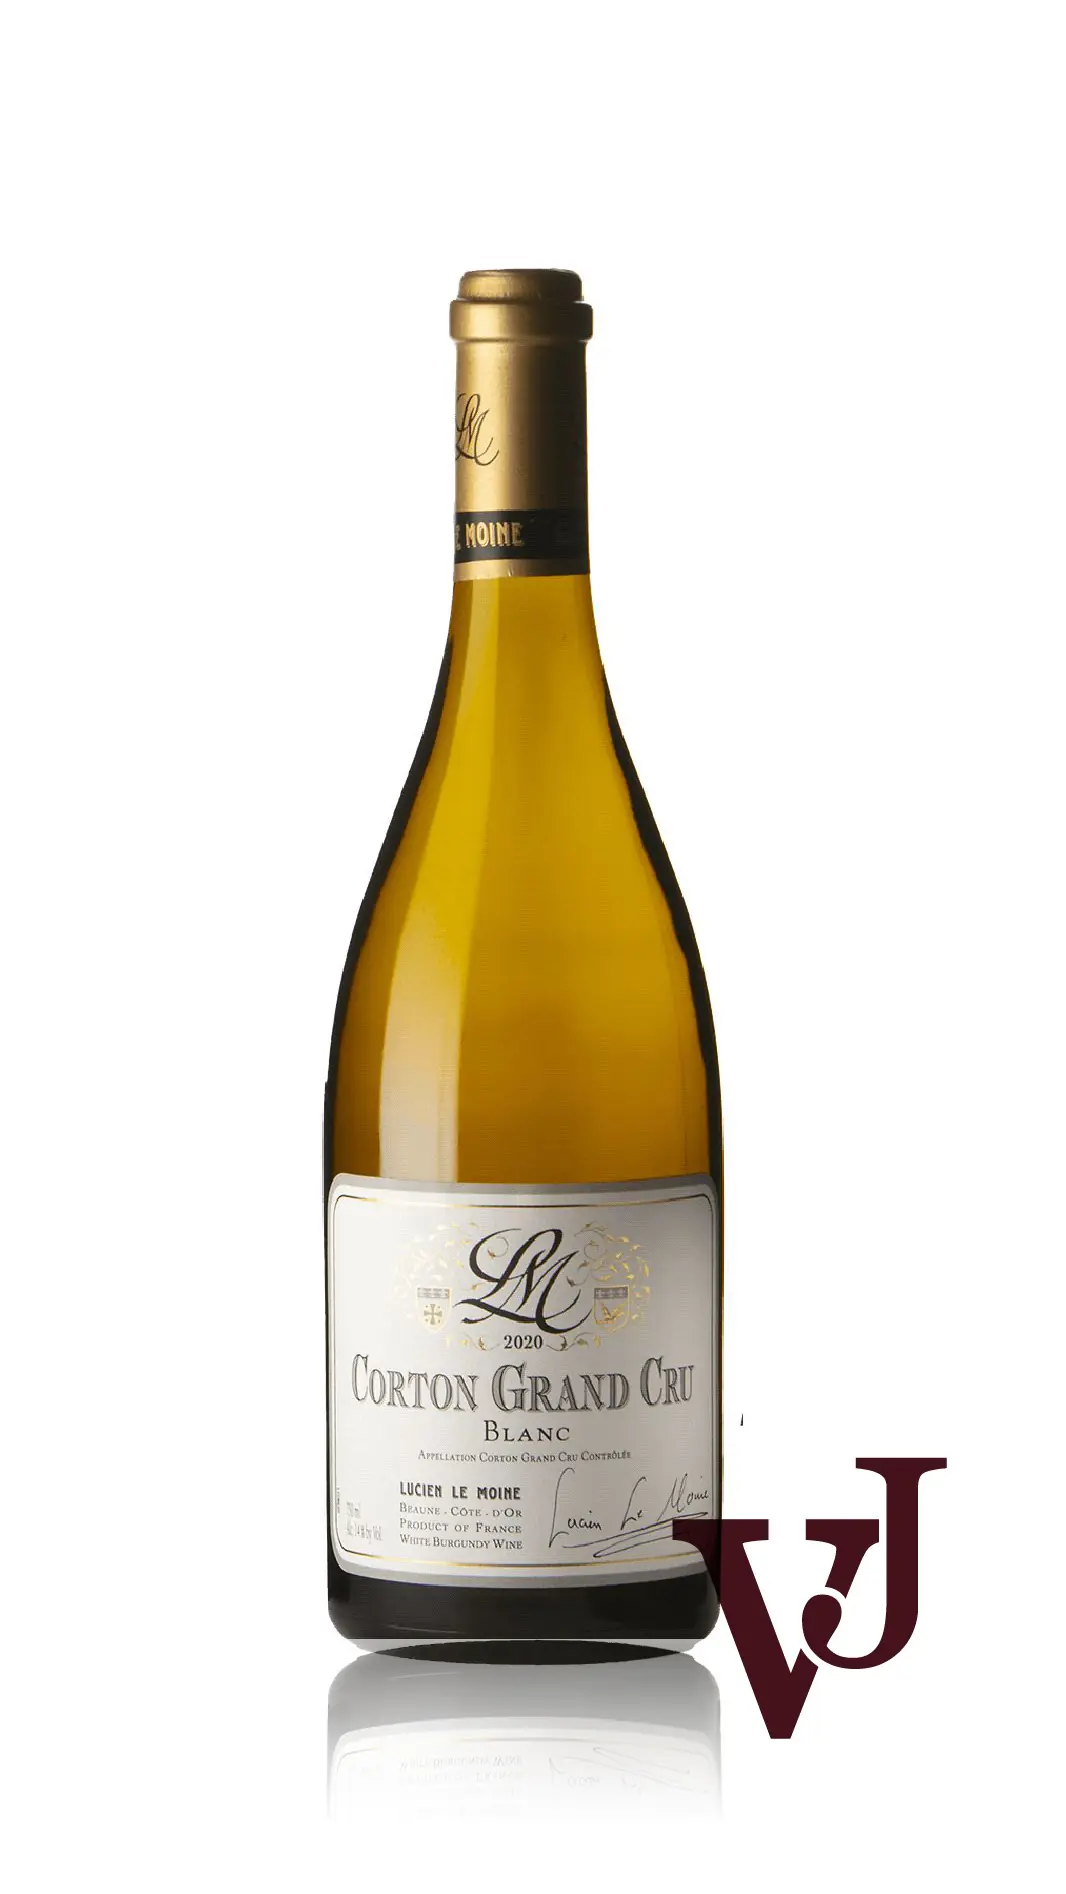 Vitt vin - Corton Blanc Grand Cru Lucien Le Moine 2020 artikel nummer 9314001 från producenten Lucien Le Moine från Frankrike. - Vinjournalen.se